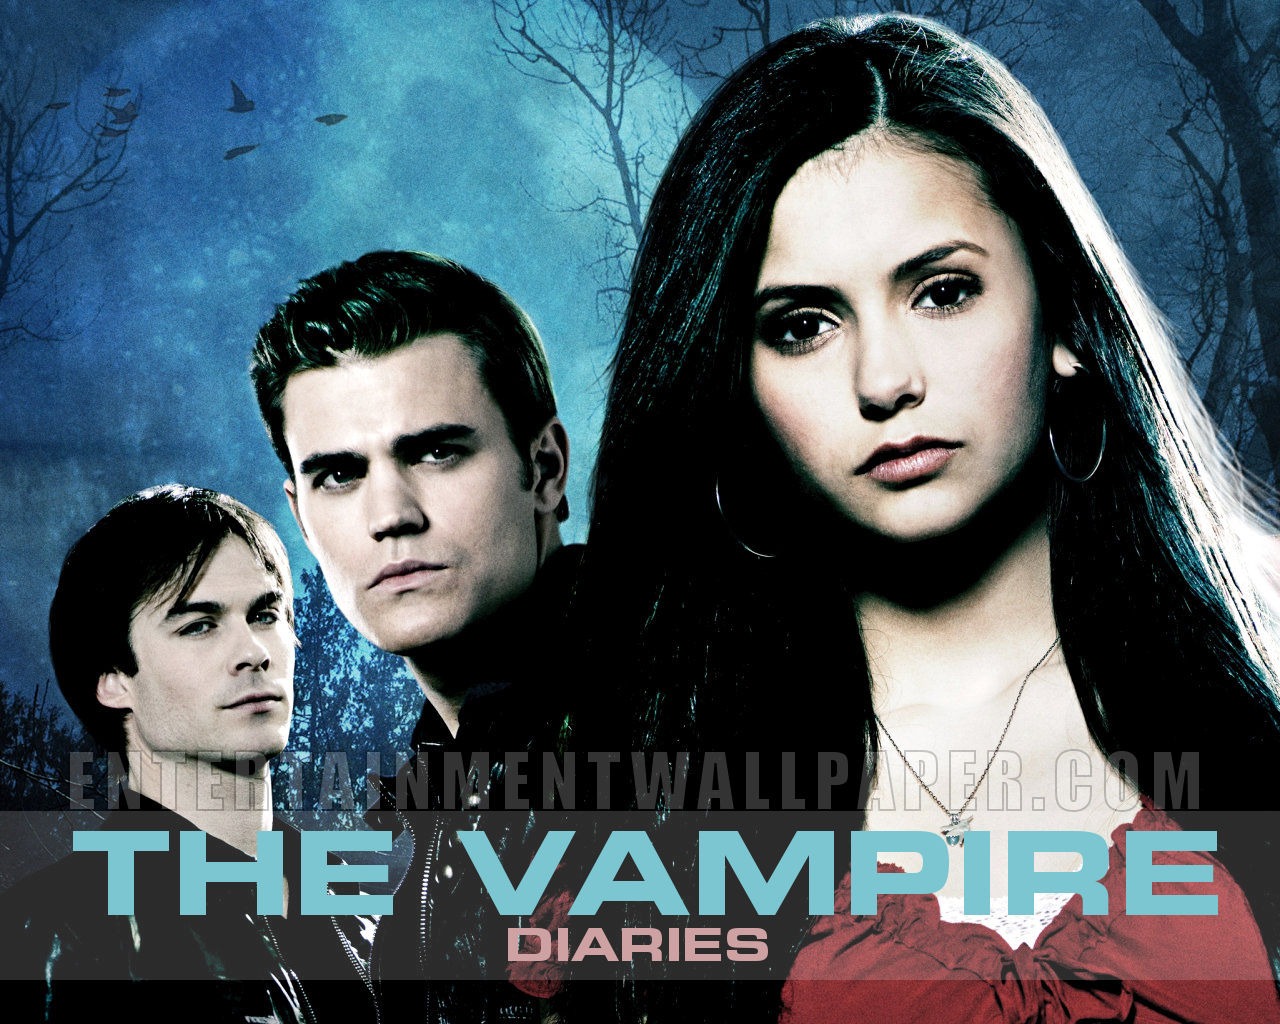 The Vampire Diaries 吸血鬼日记1 - 1280x1024